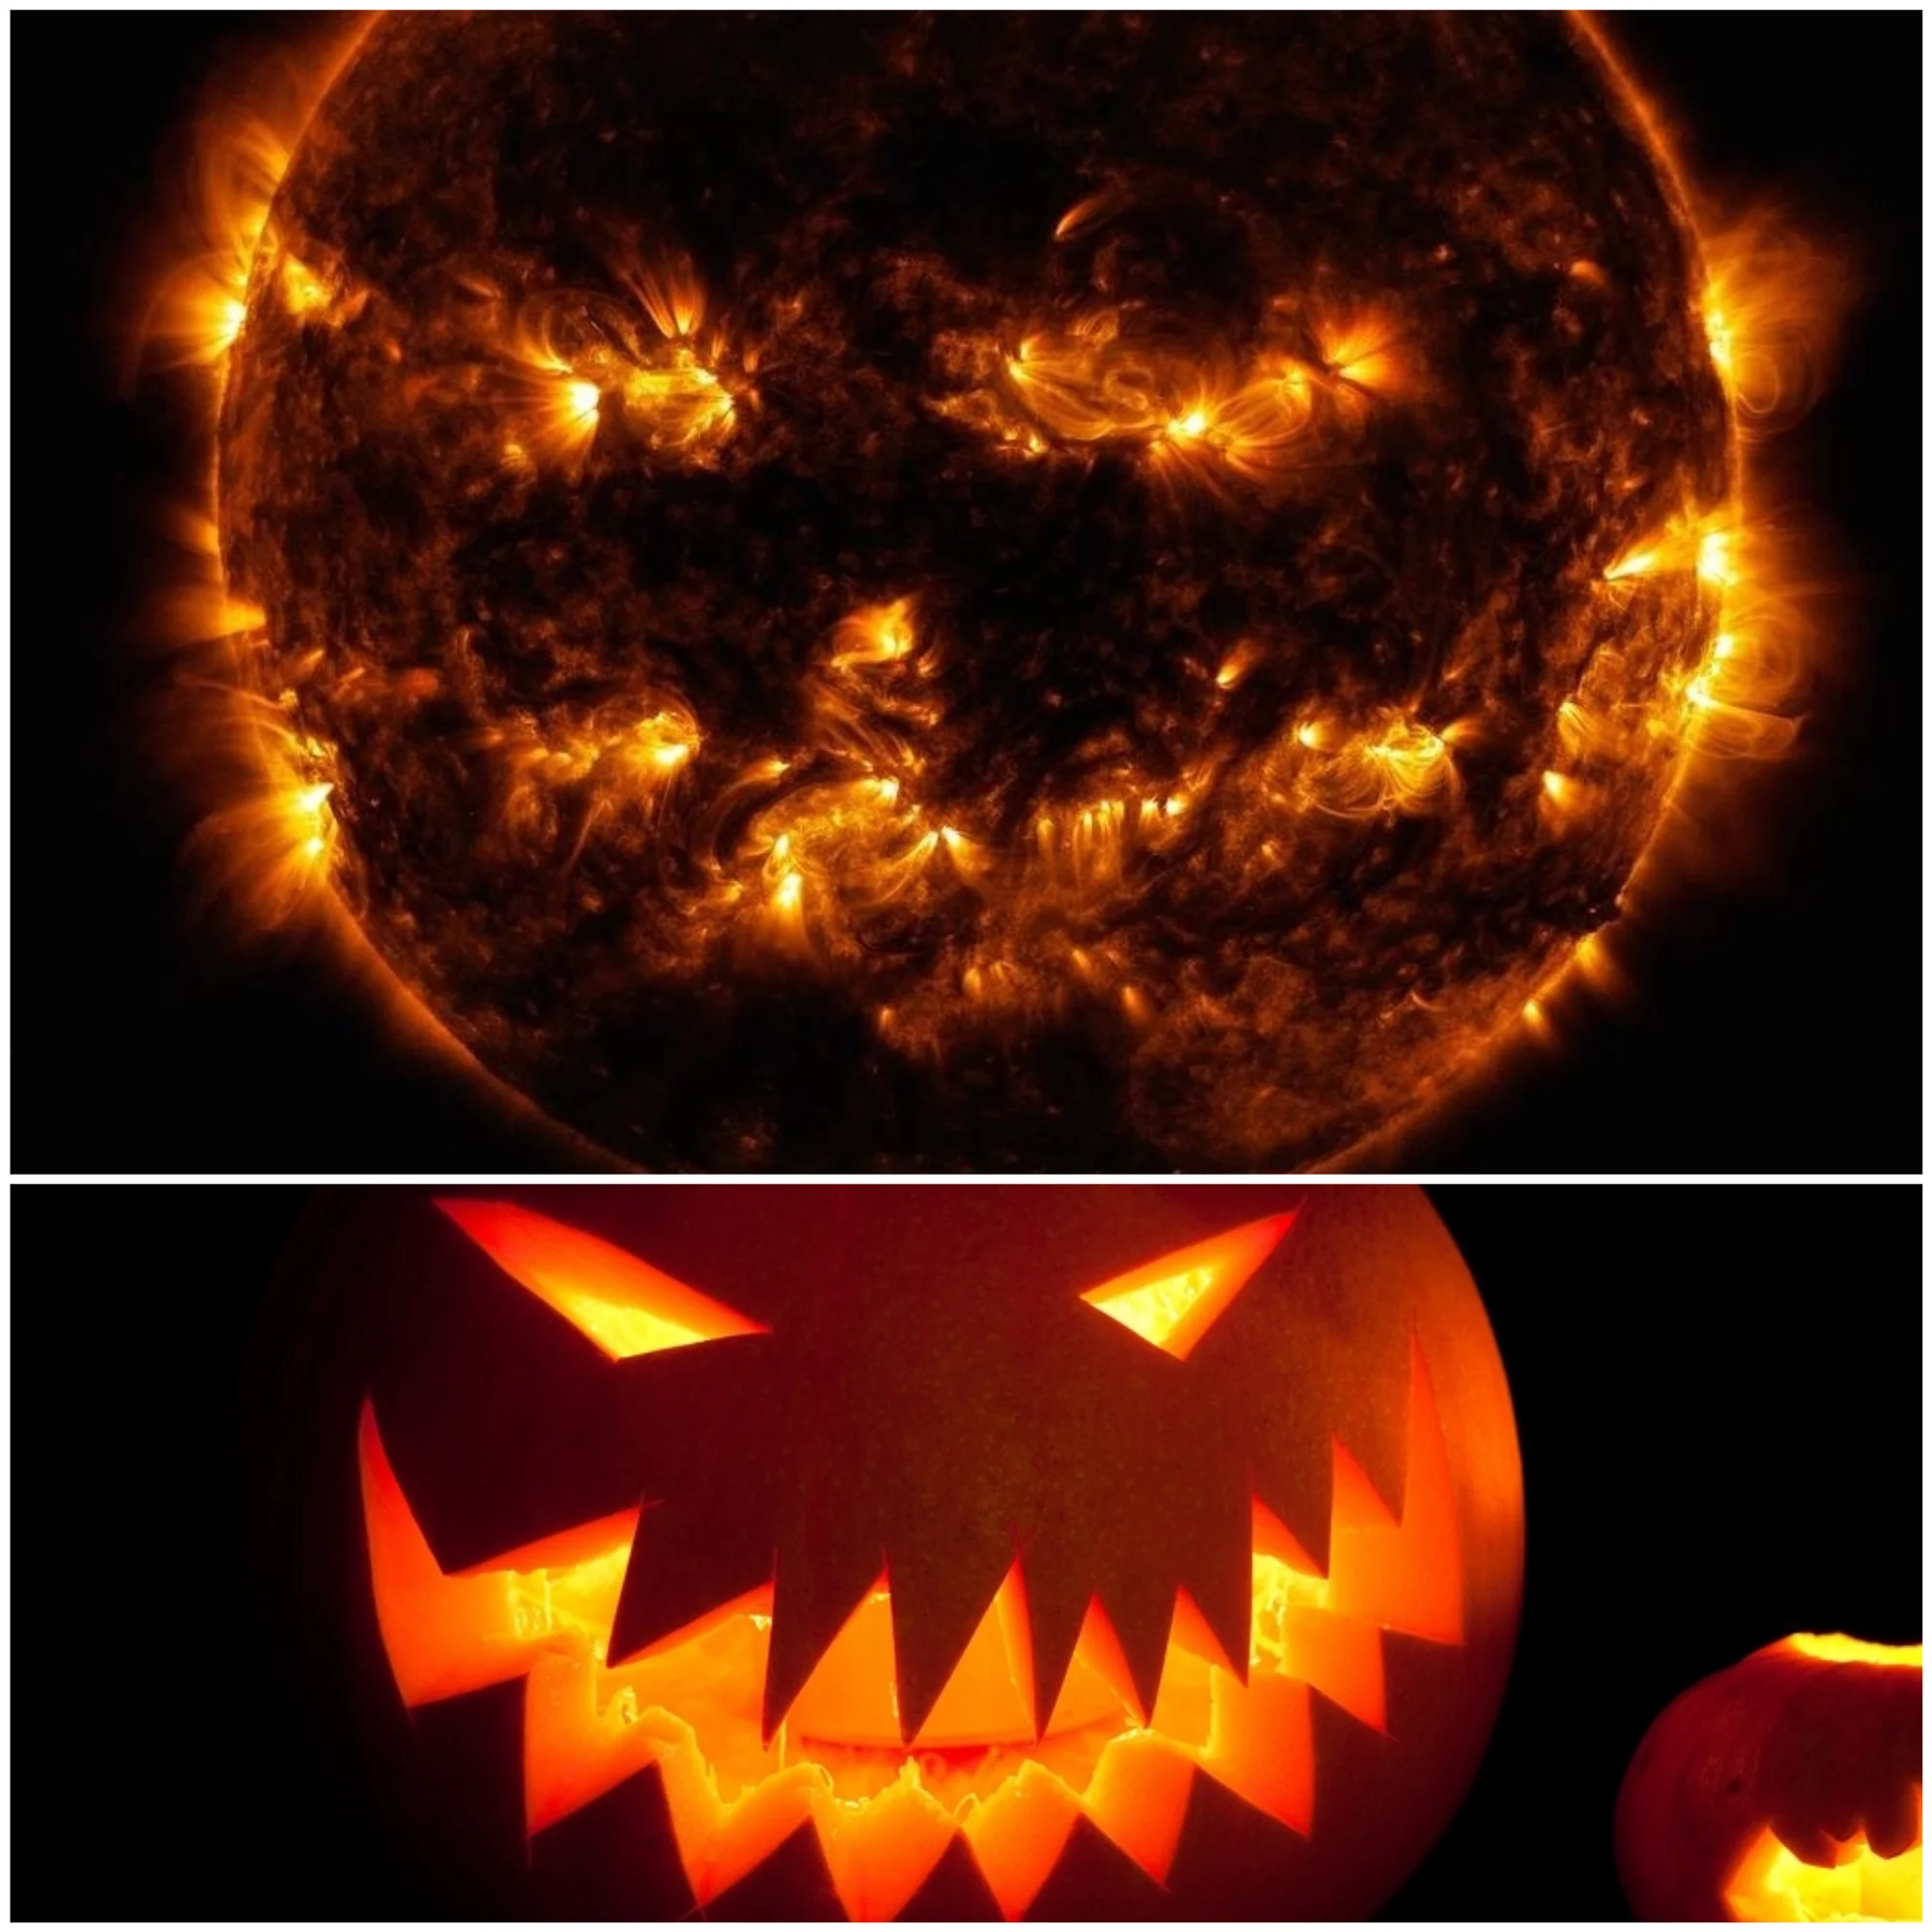 В честь Хэллоуина NASA опубликовало фото Солнца, что похоже на жуткую тыкву - фото 455691